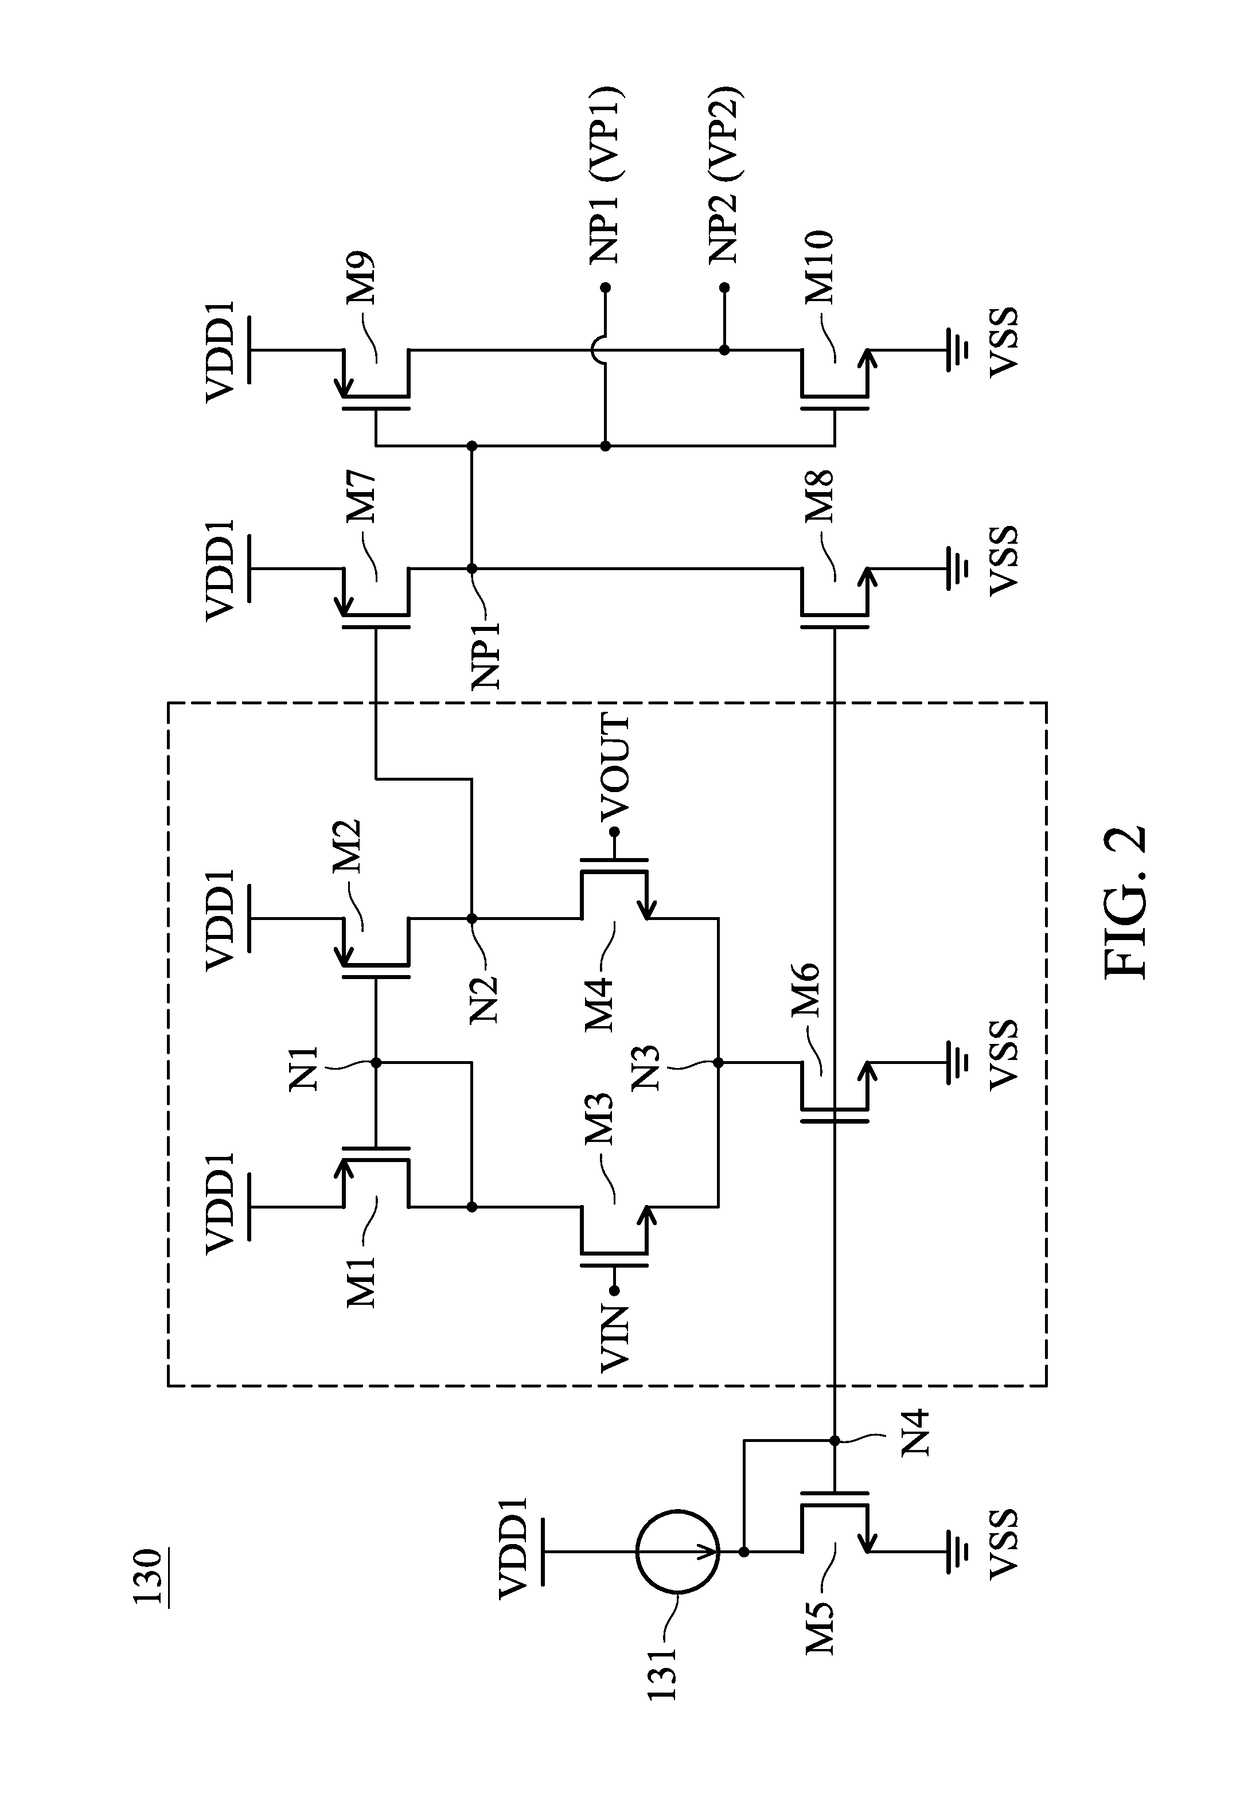 Low-voltage-drop rectifier circuit